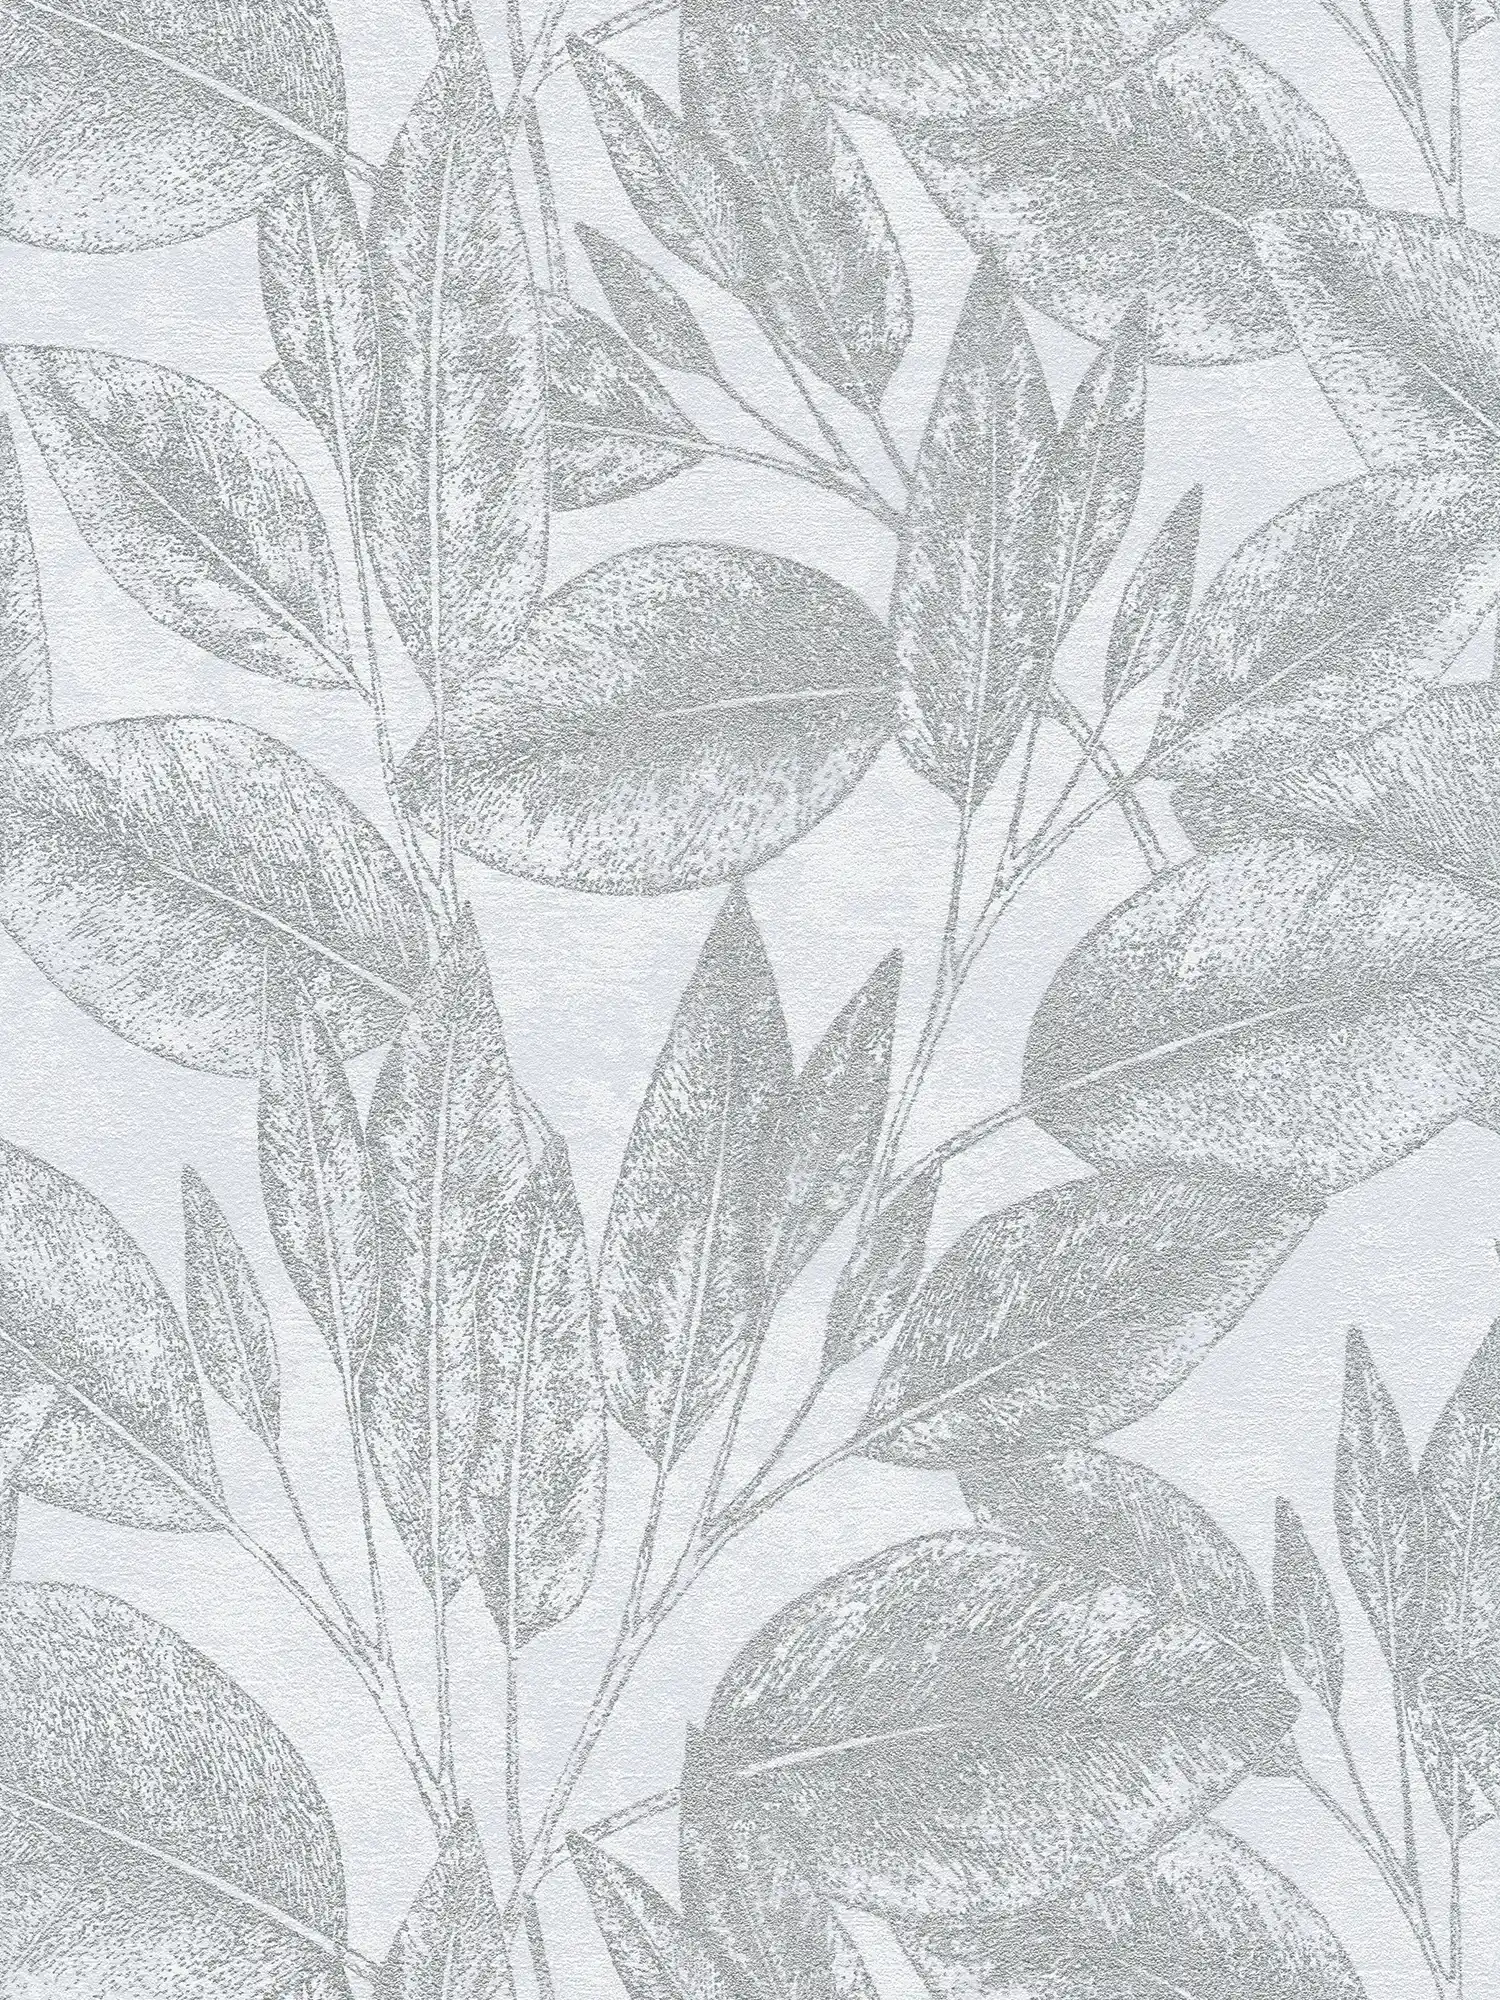 Carta da parati con motivo a foglie dall'aspetto vintage - Grigio, metallizzato
